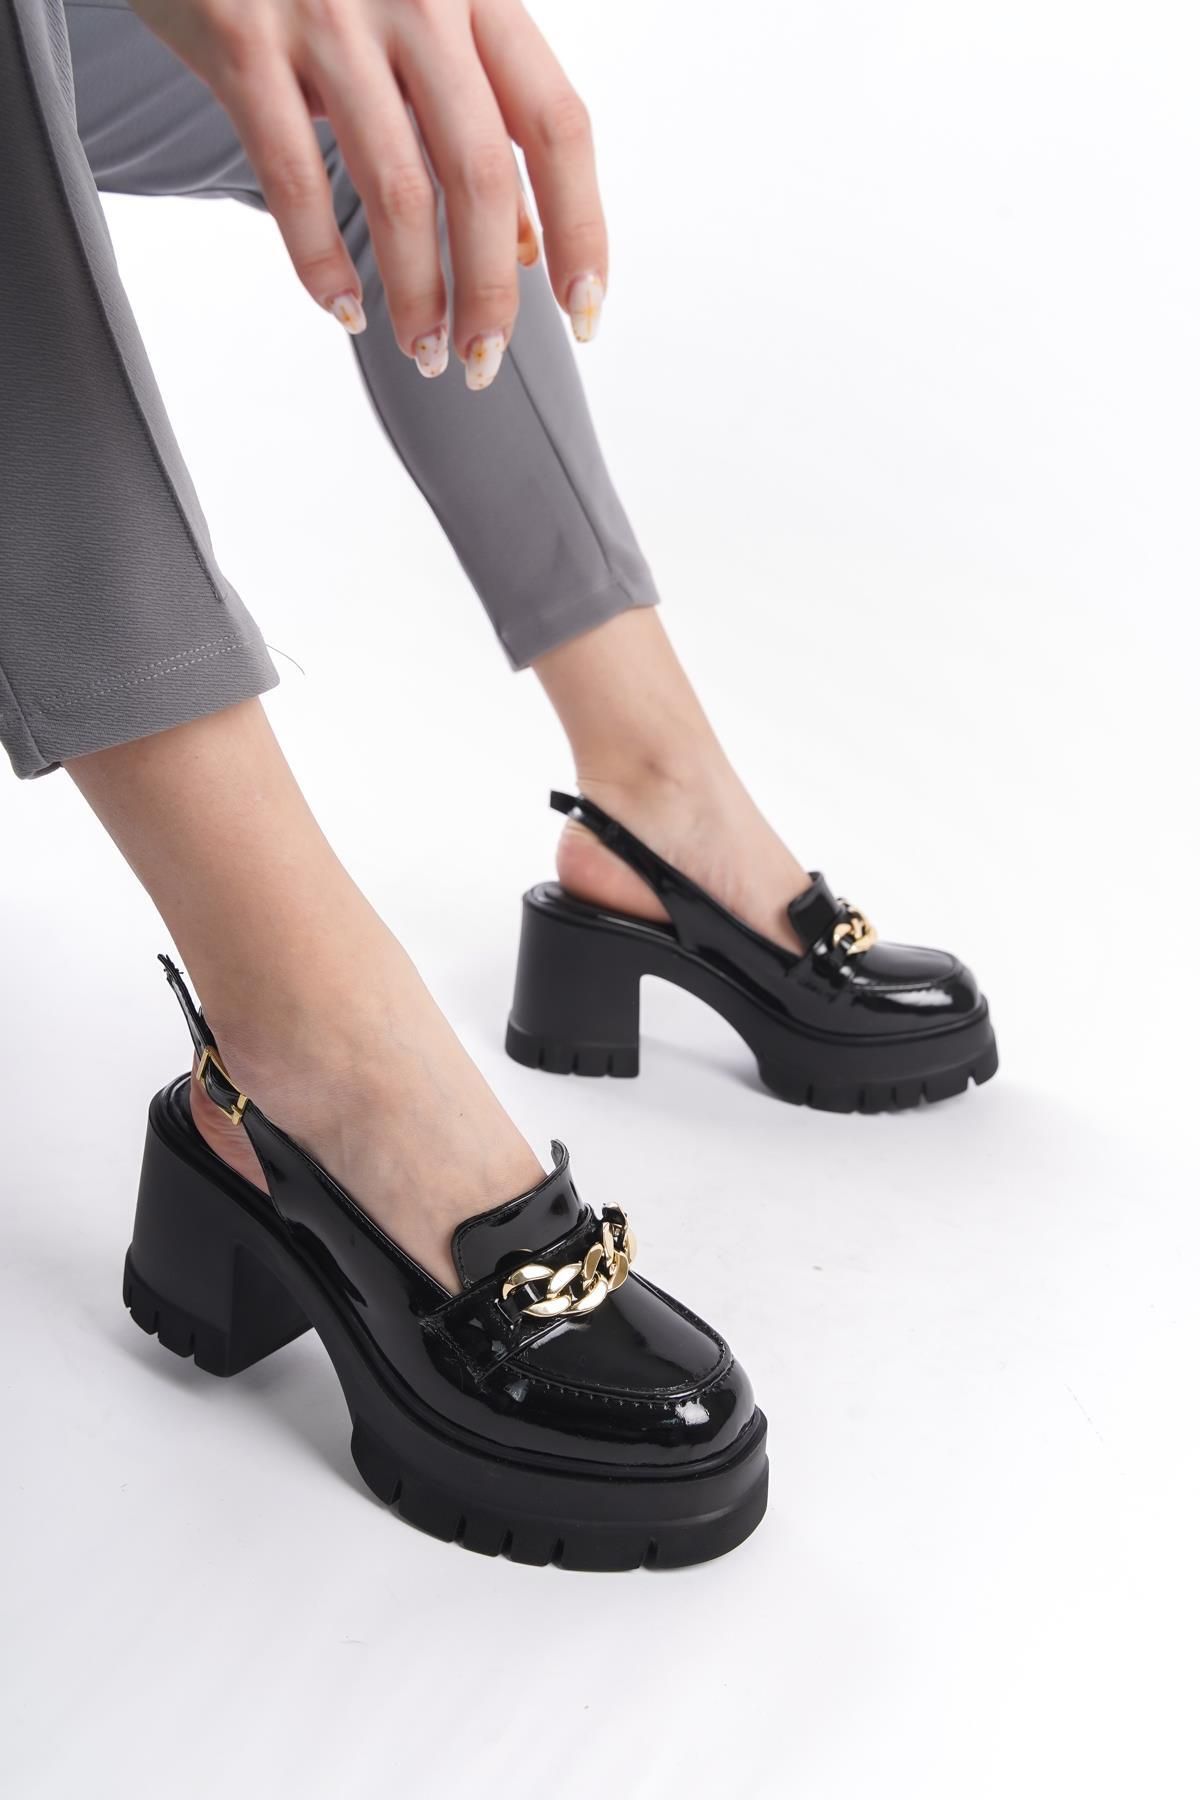 Preshley Kadın Bianca Siyah Rugan Arkası Acık 8 cm Topuklu Platformlu Ayakkabı 650